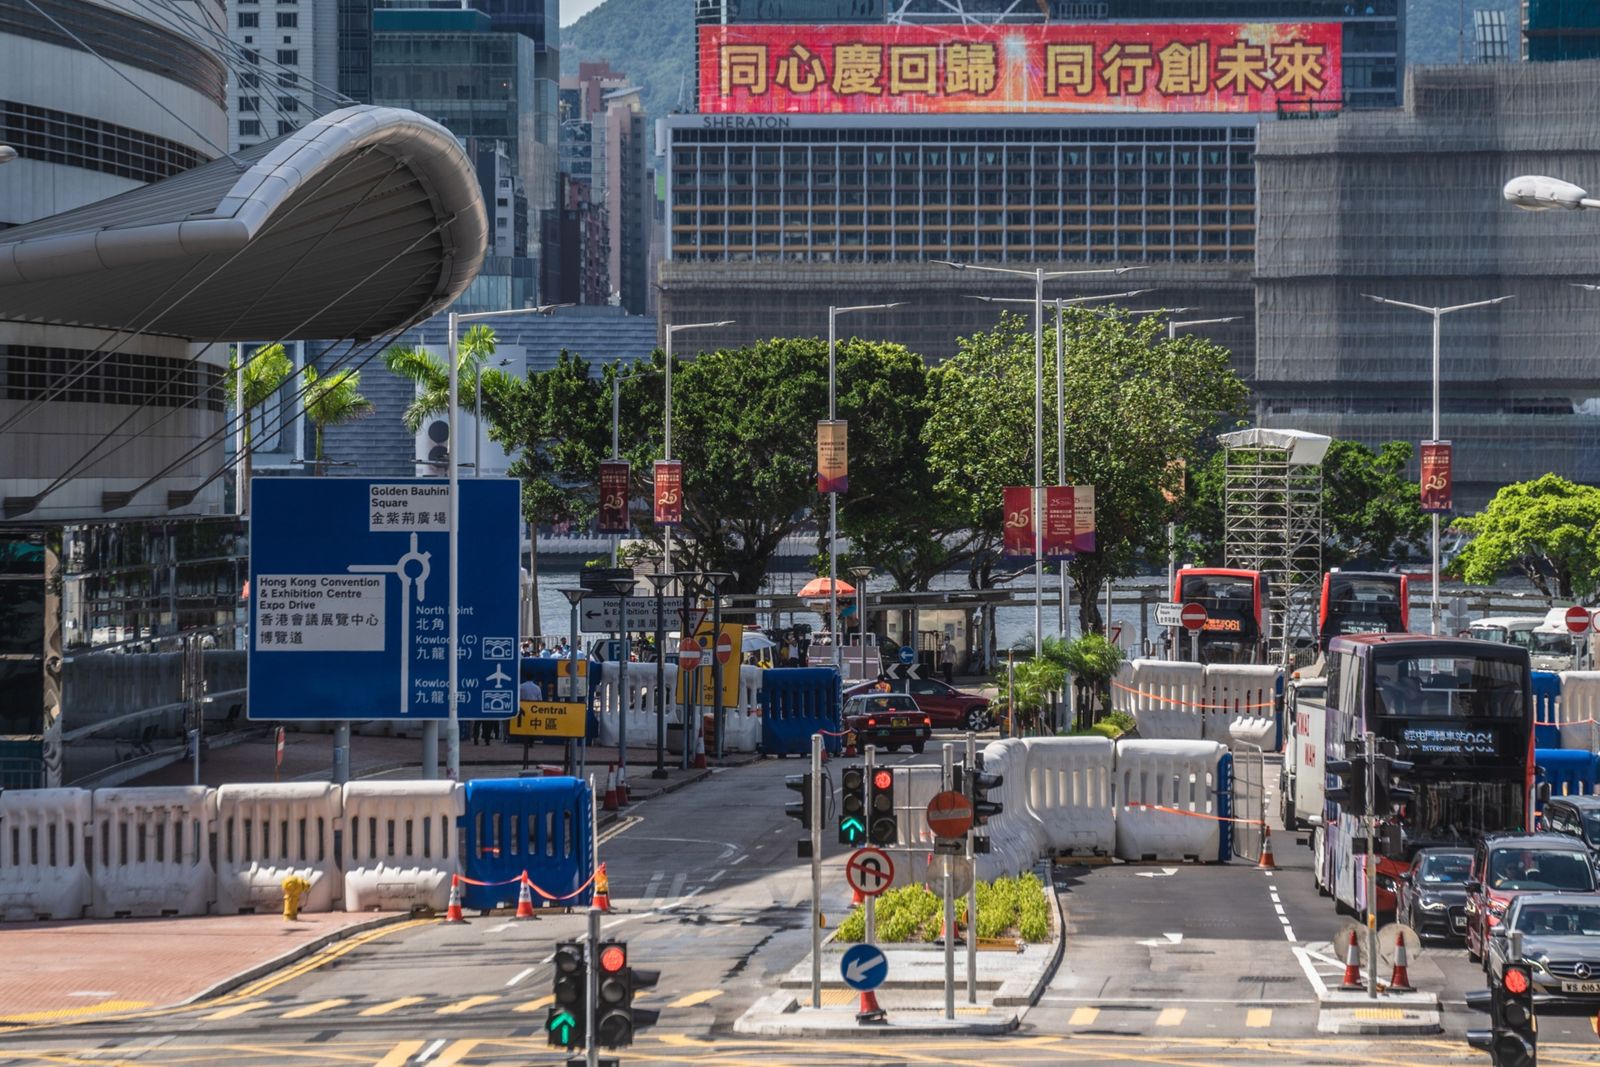 تدابير أمنية أمام مركز المؤتمرات والمعارض في هونج كونج - 27 يونيو 2022 - Bloomberg